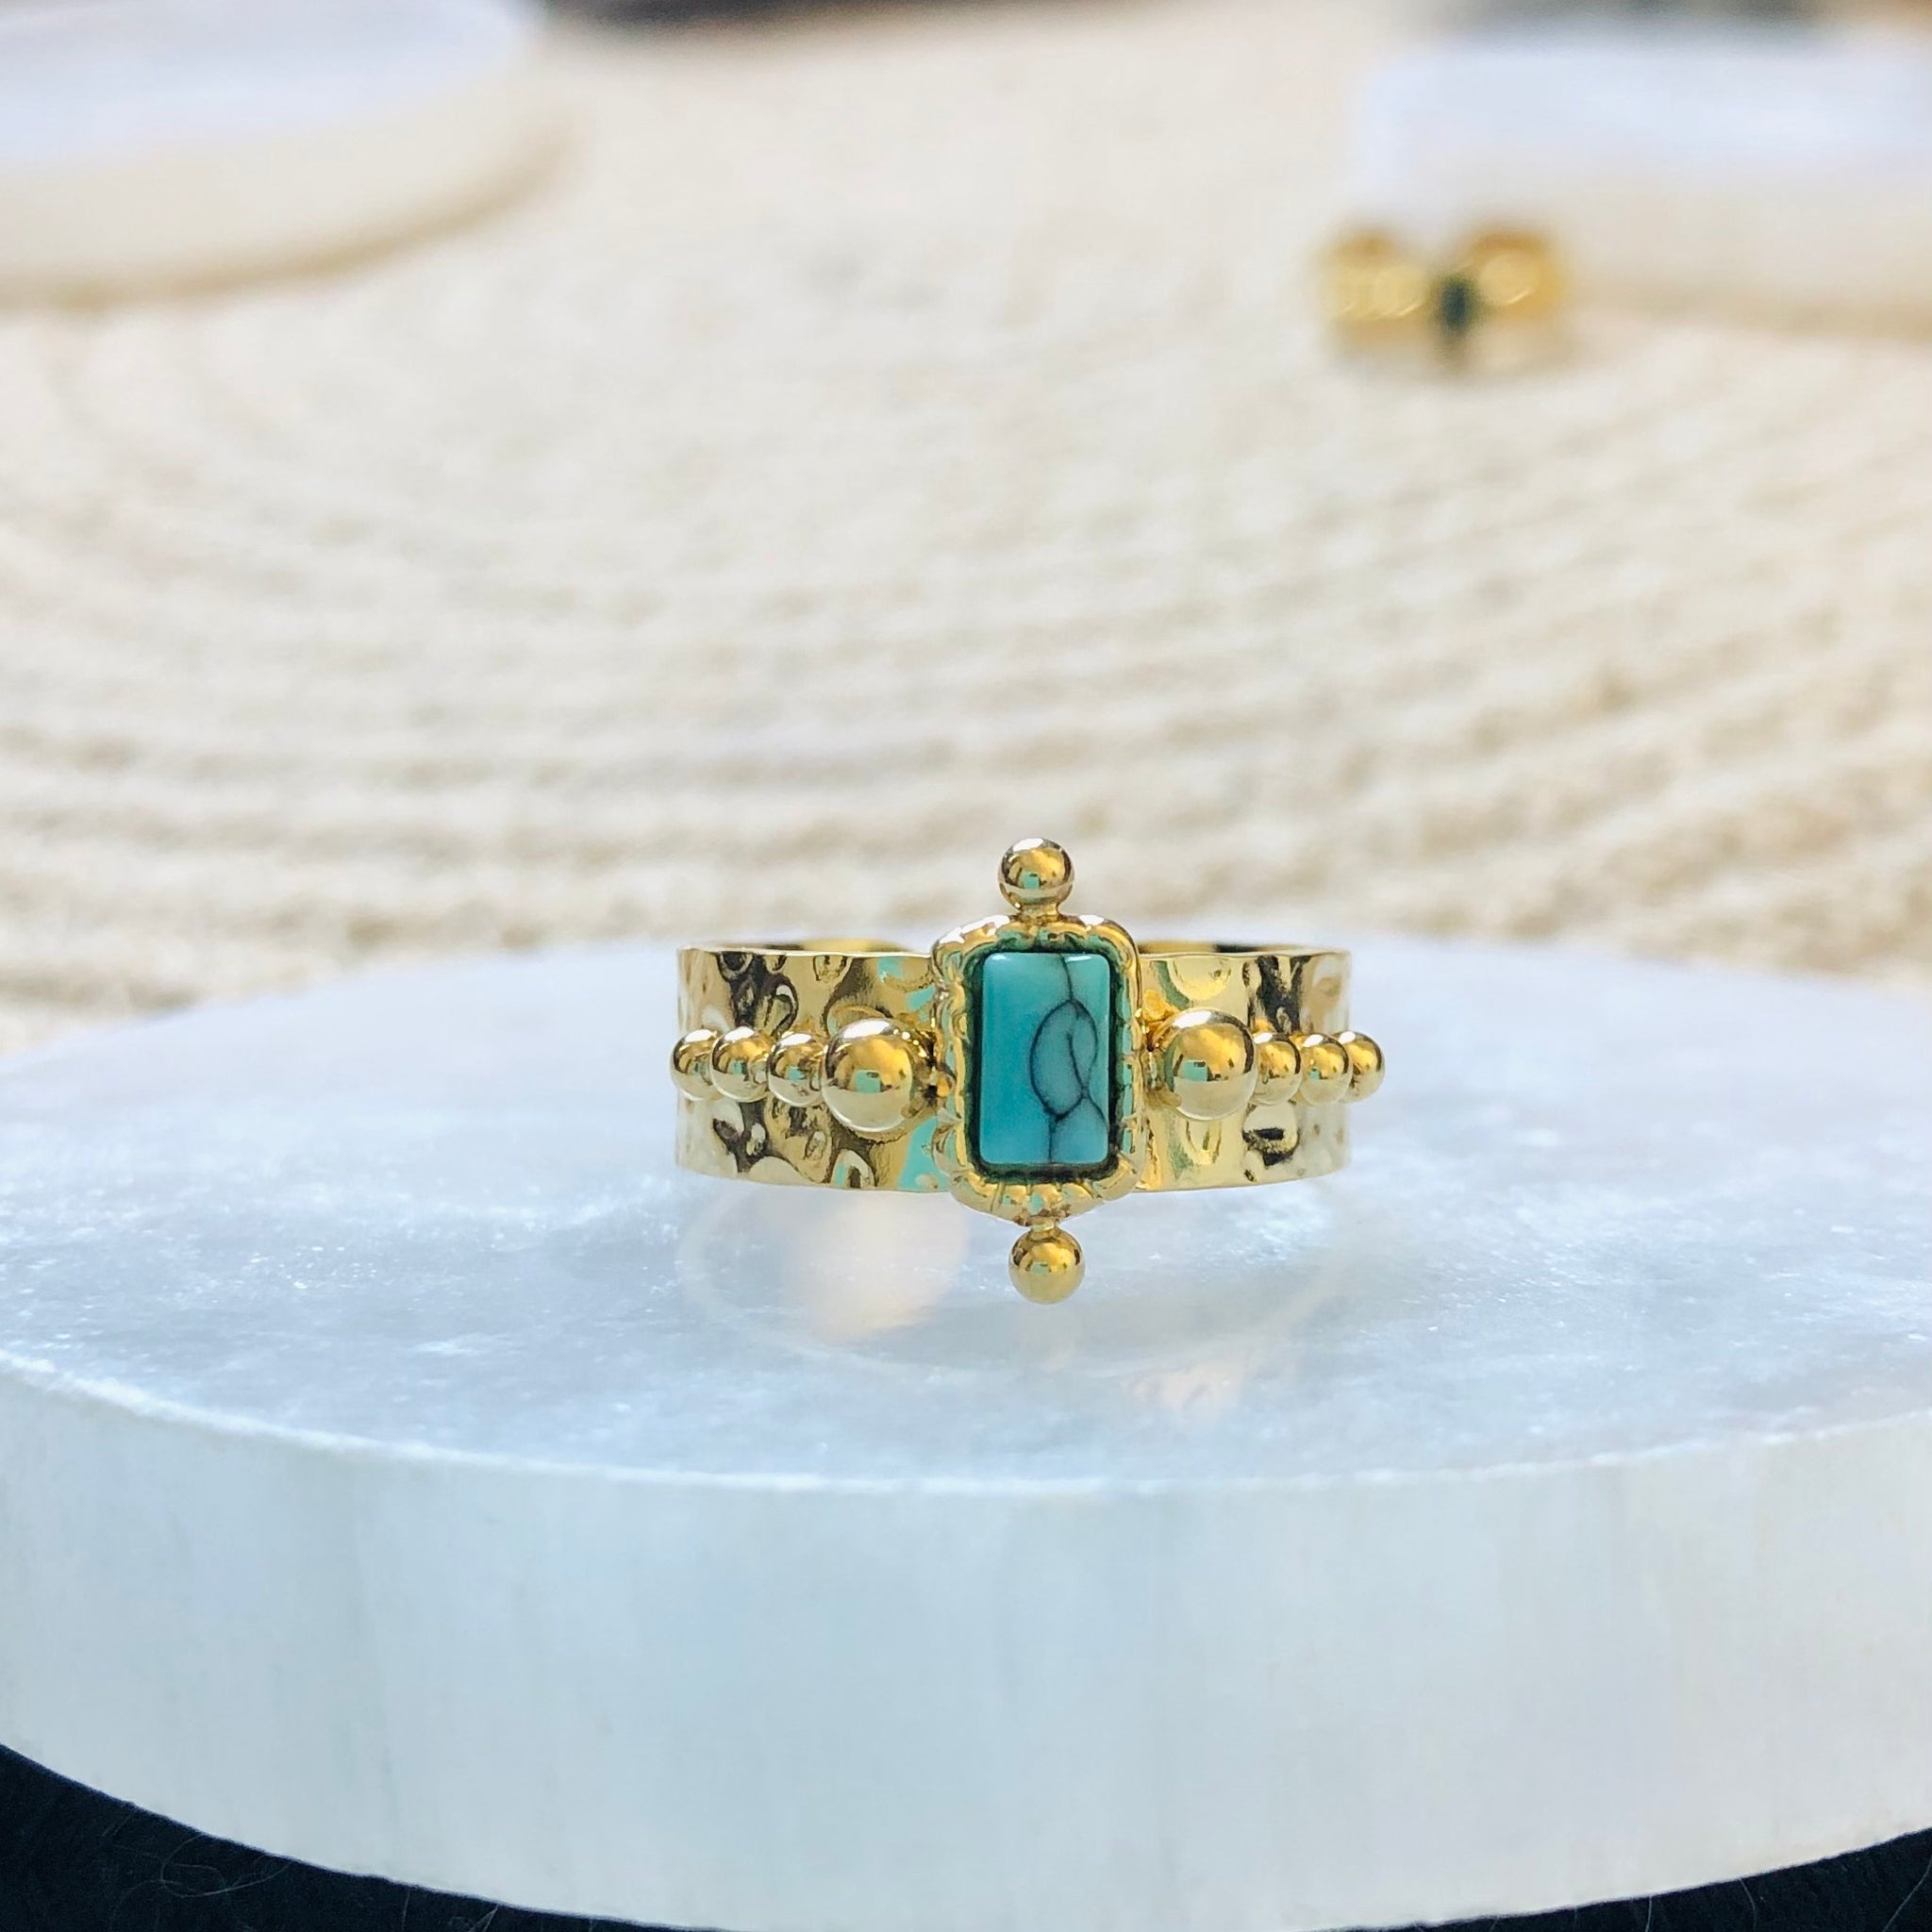 Adjustable Turquoise Boho Ring - Gold